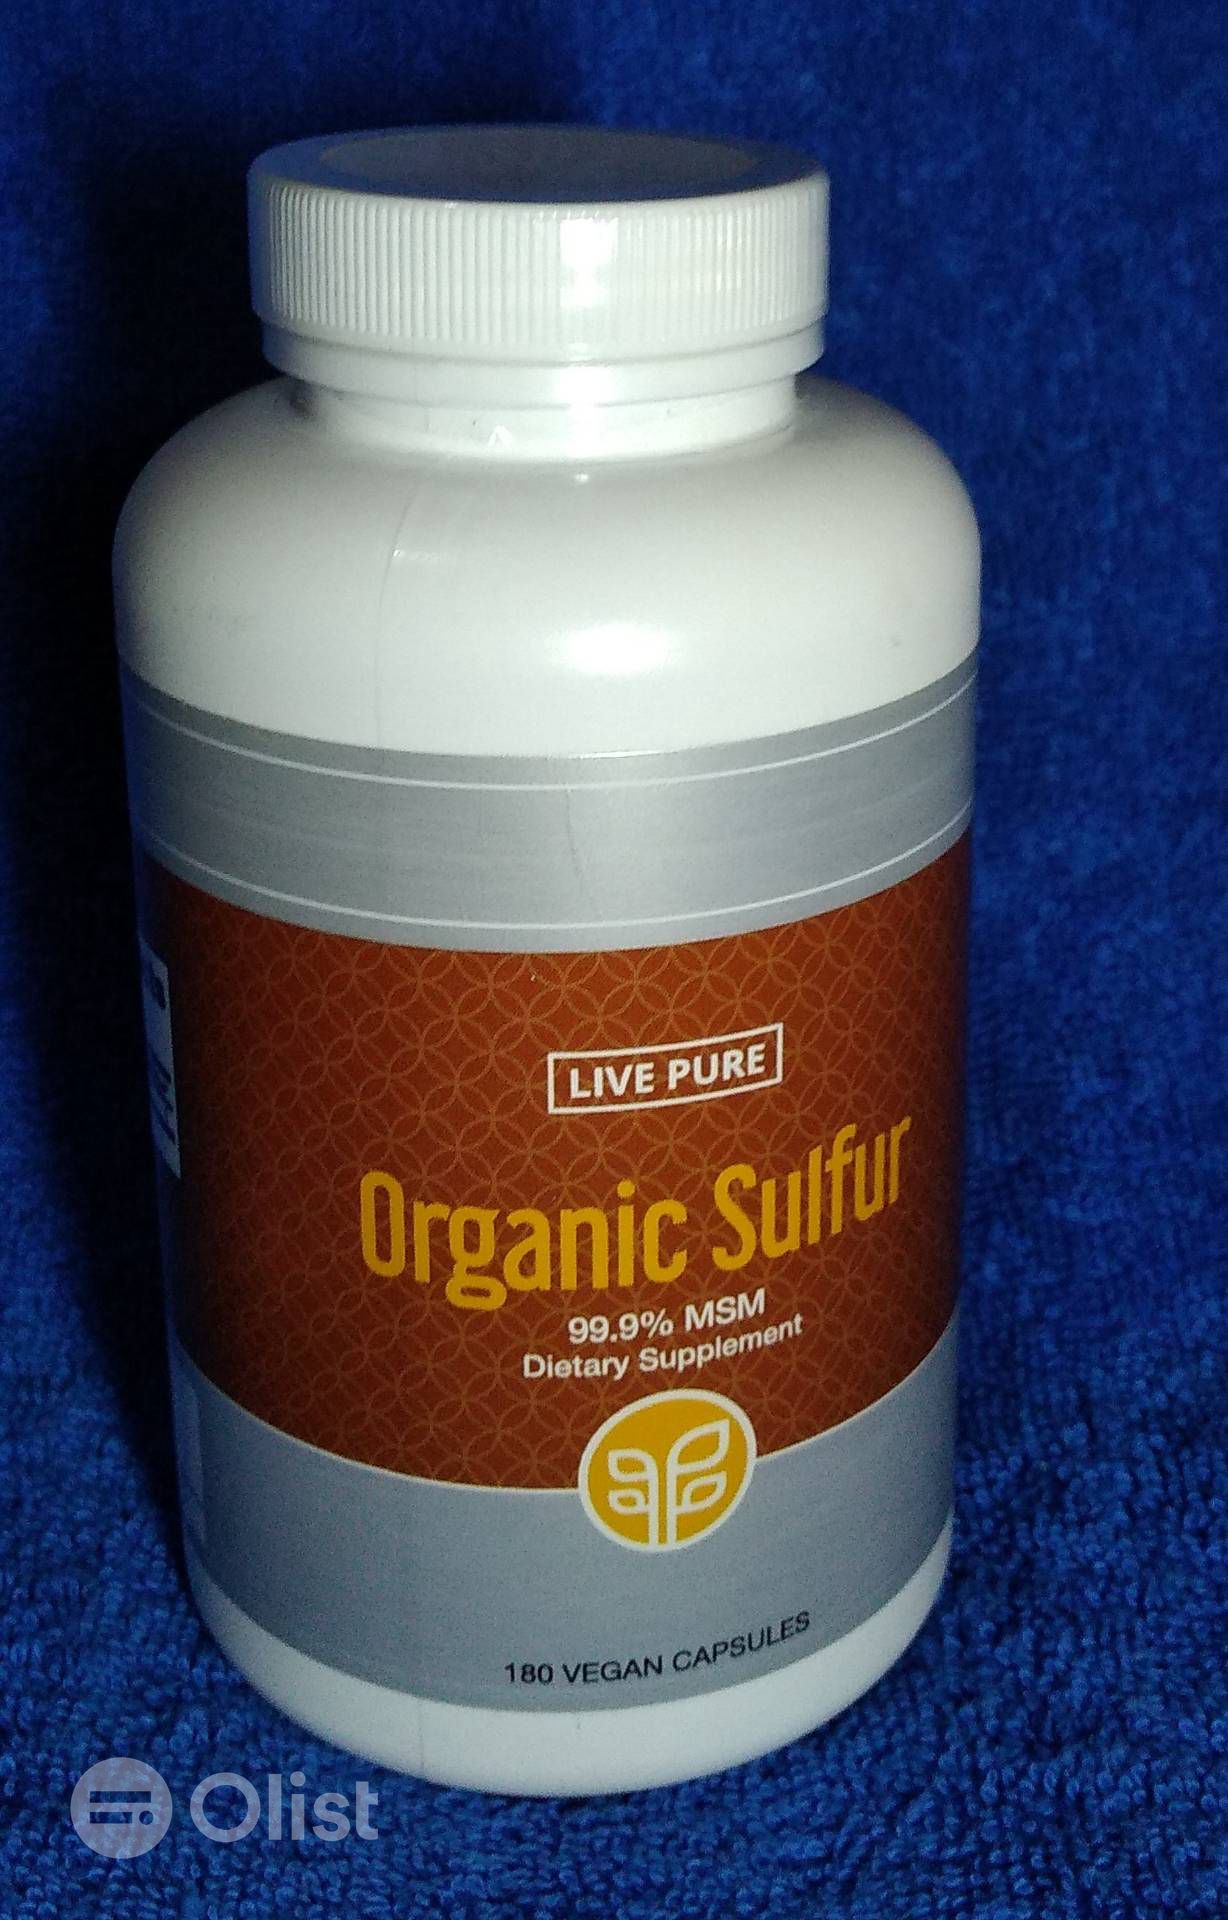 Organic Sulfur - na Heureka - kde kúpiť - lekaren - Dr max - web výrobcu